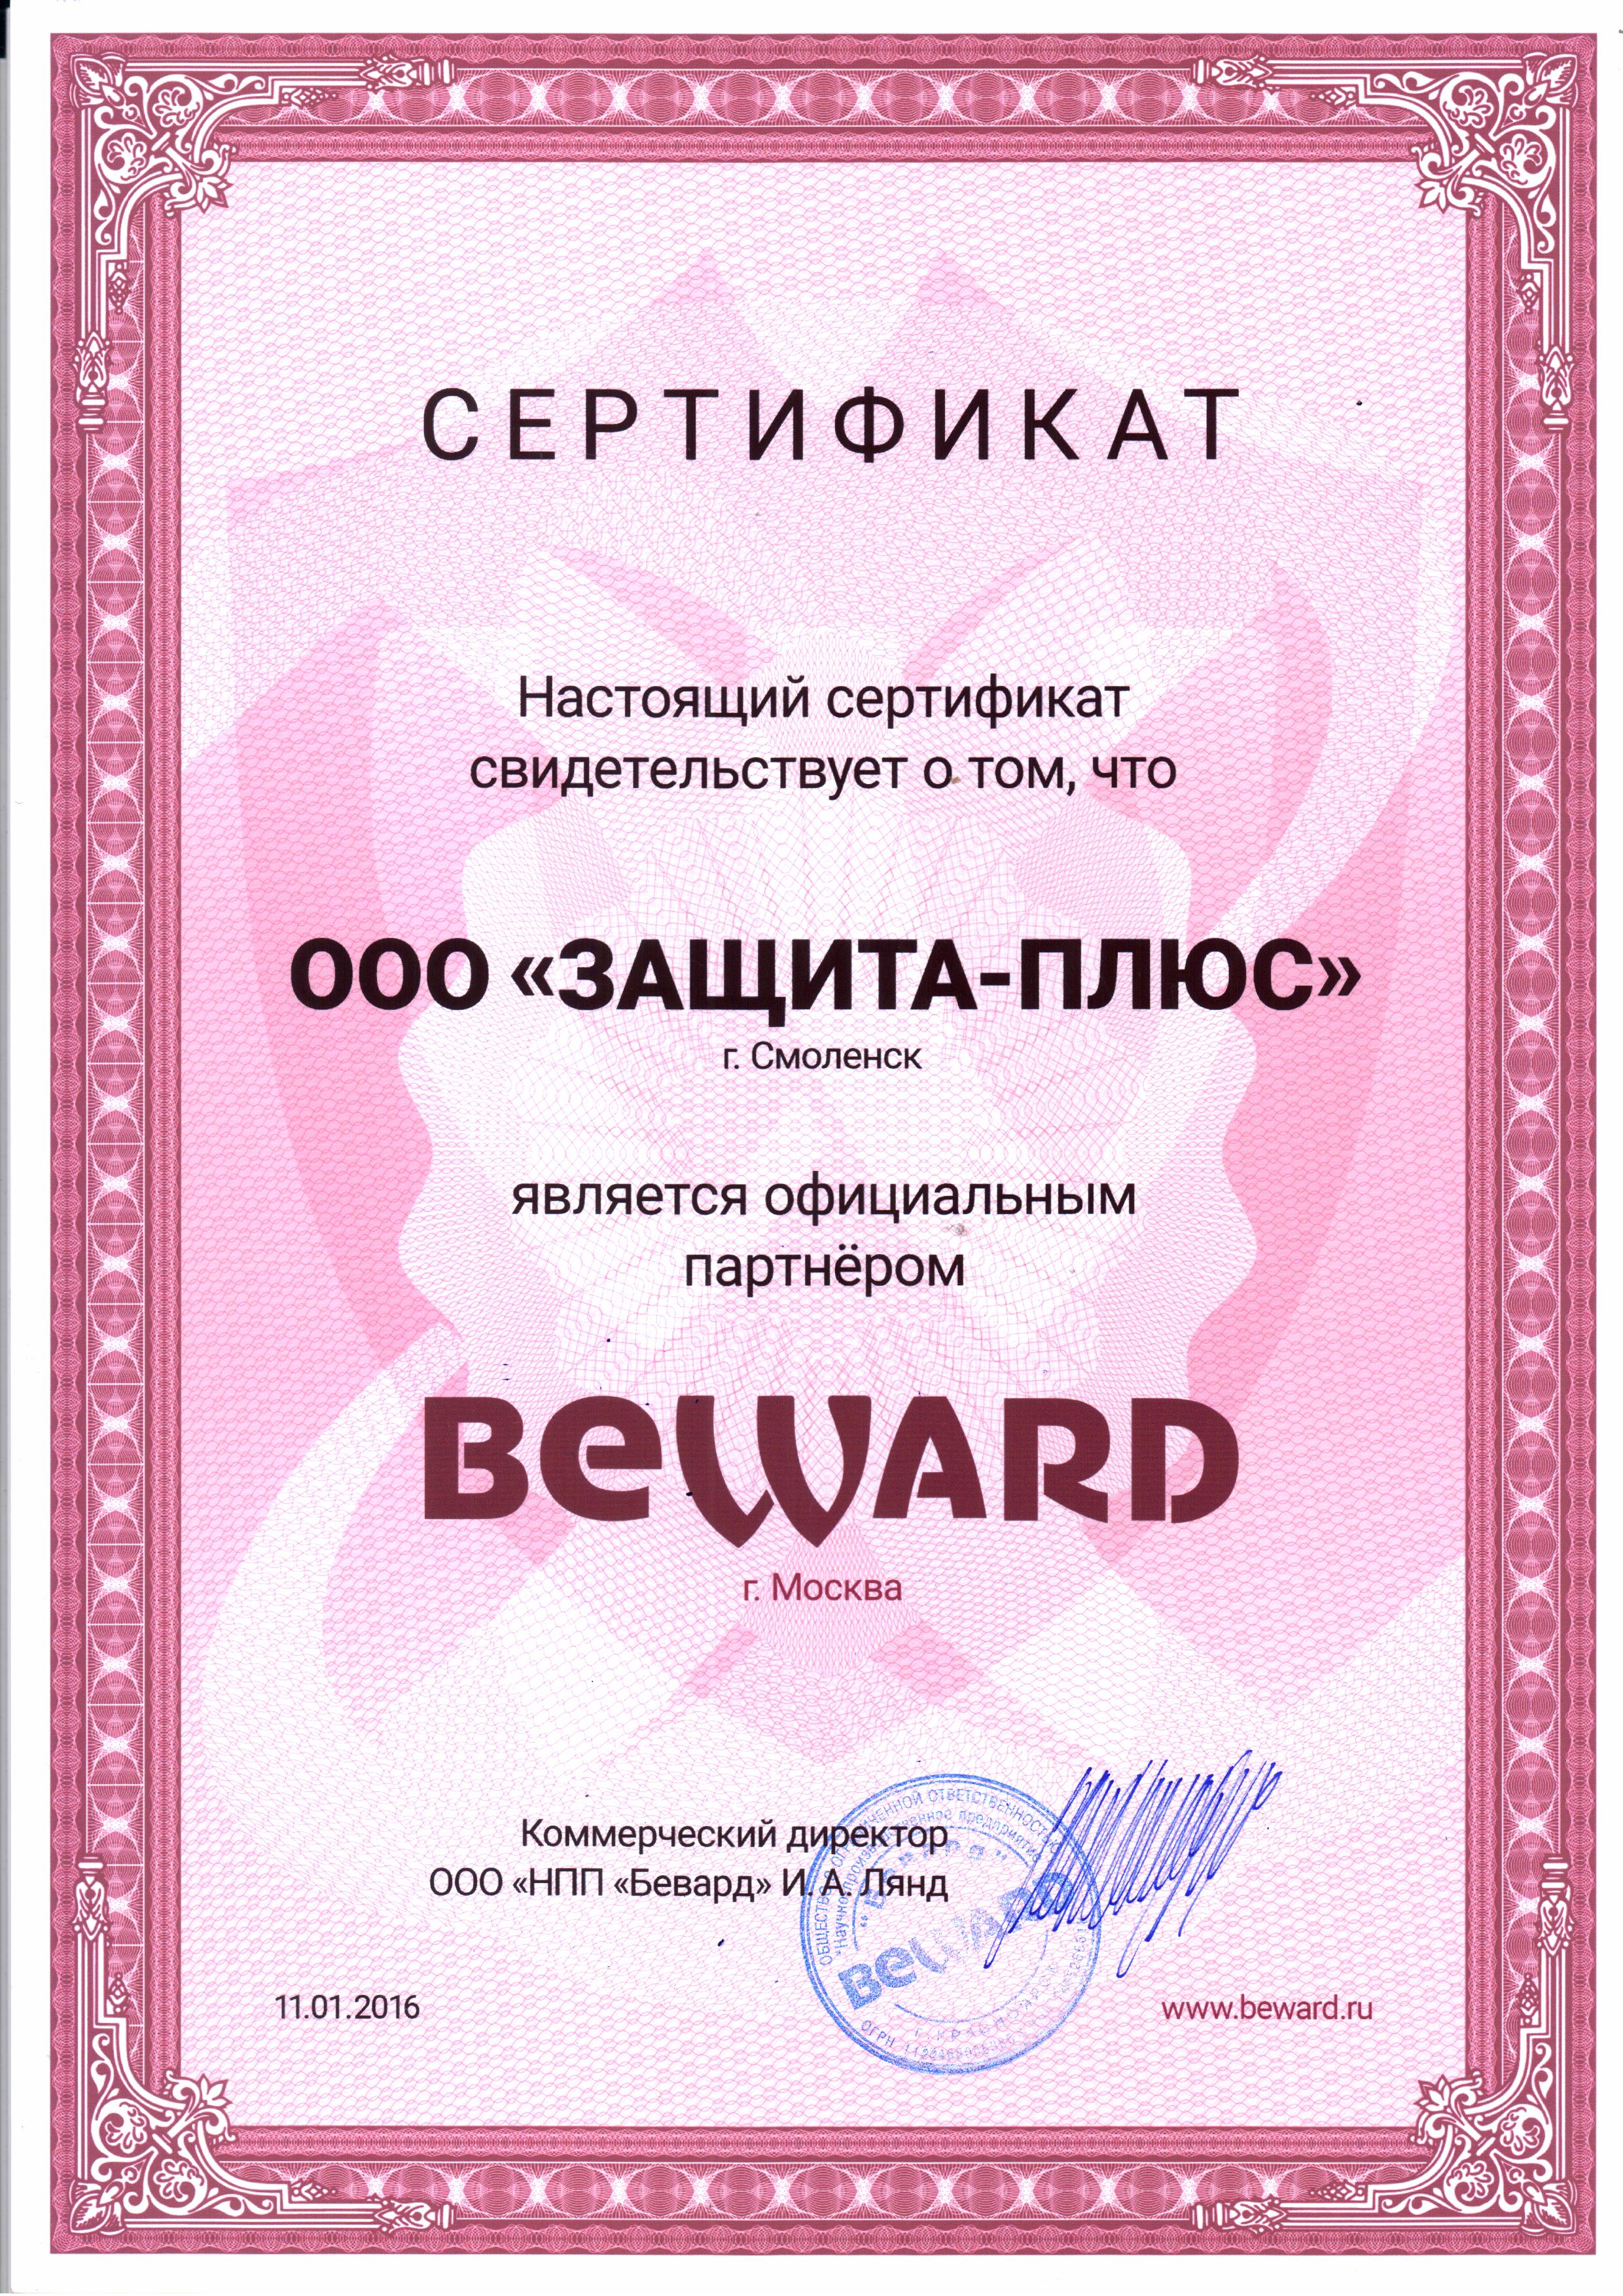 Сертификат партнера Бевард по Смоленской области Рославль Сафоново